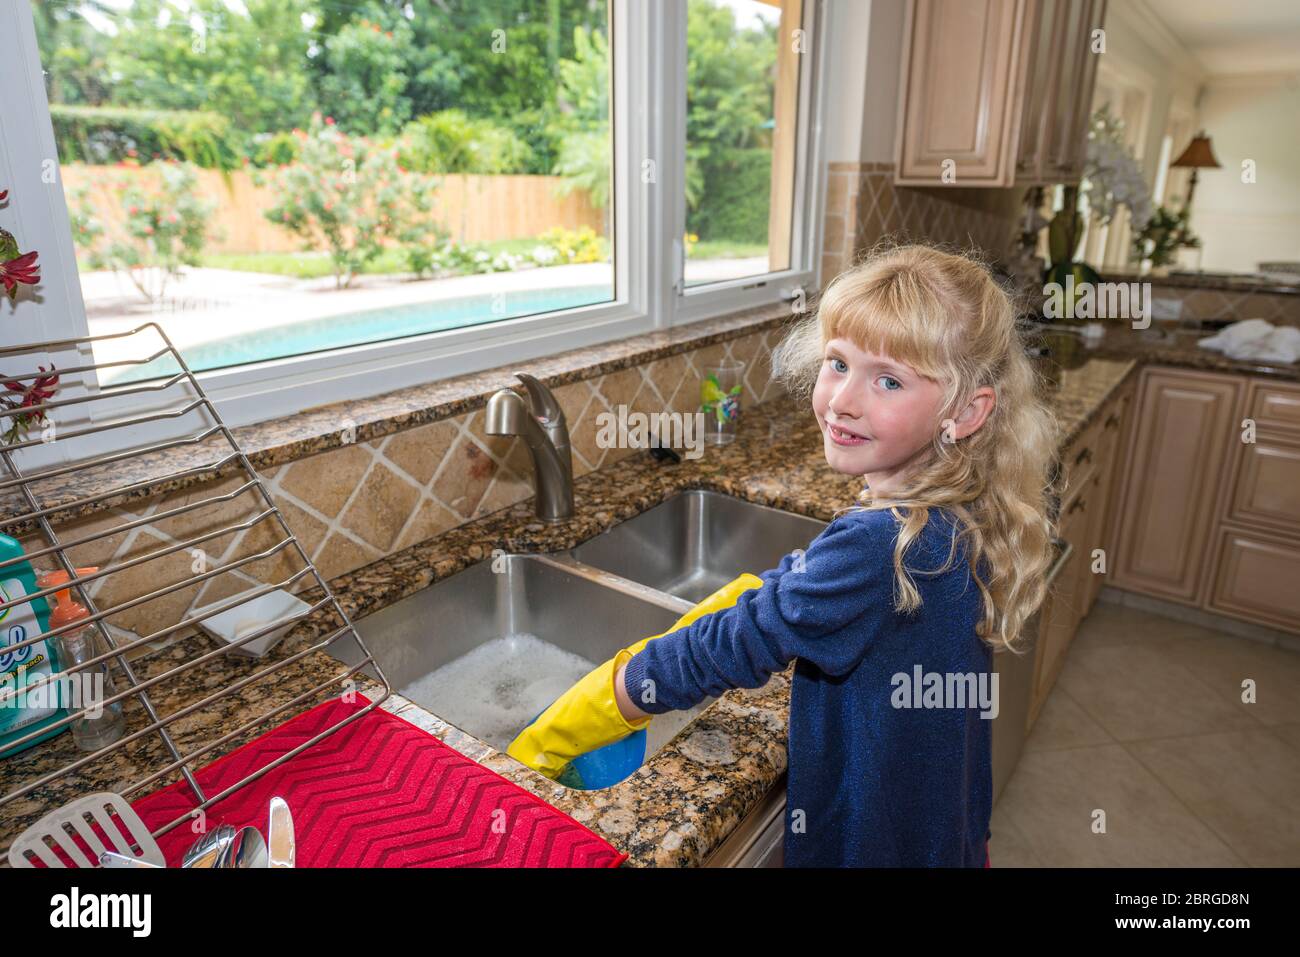 Junges 9-jähriges Mädchen, das Geschirr in der Küche, neapel, florida, usa wäscht Stockfoto